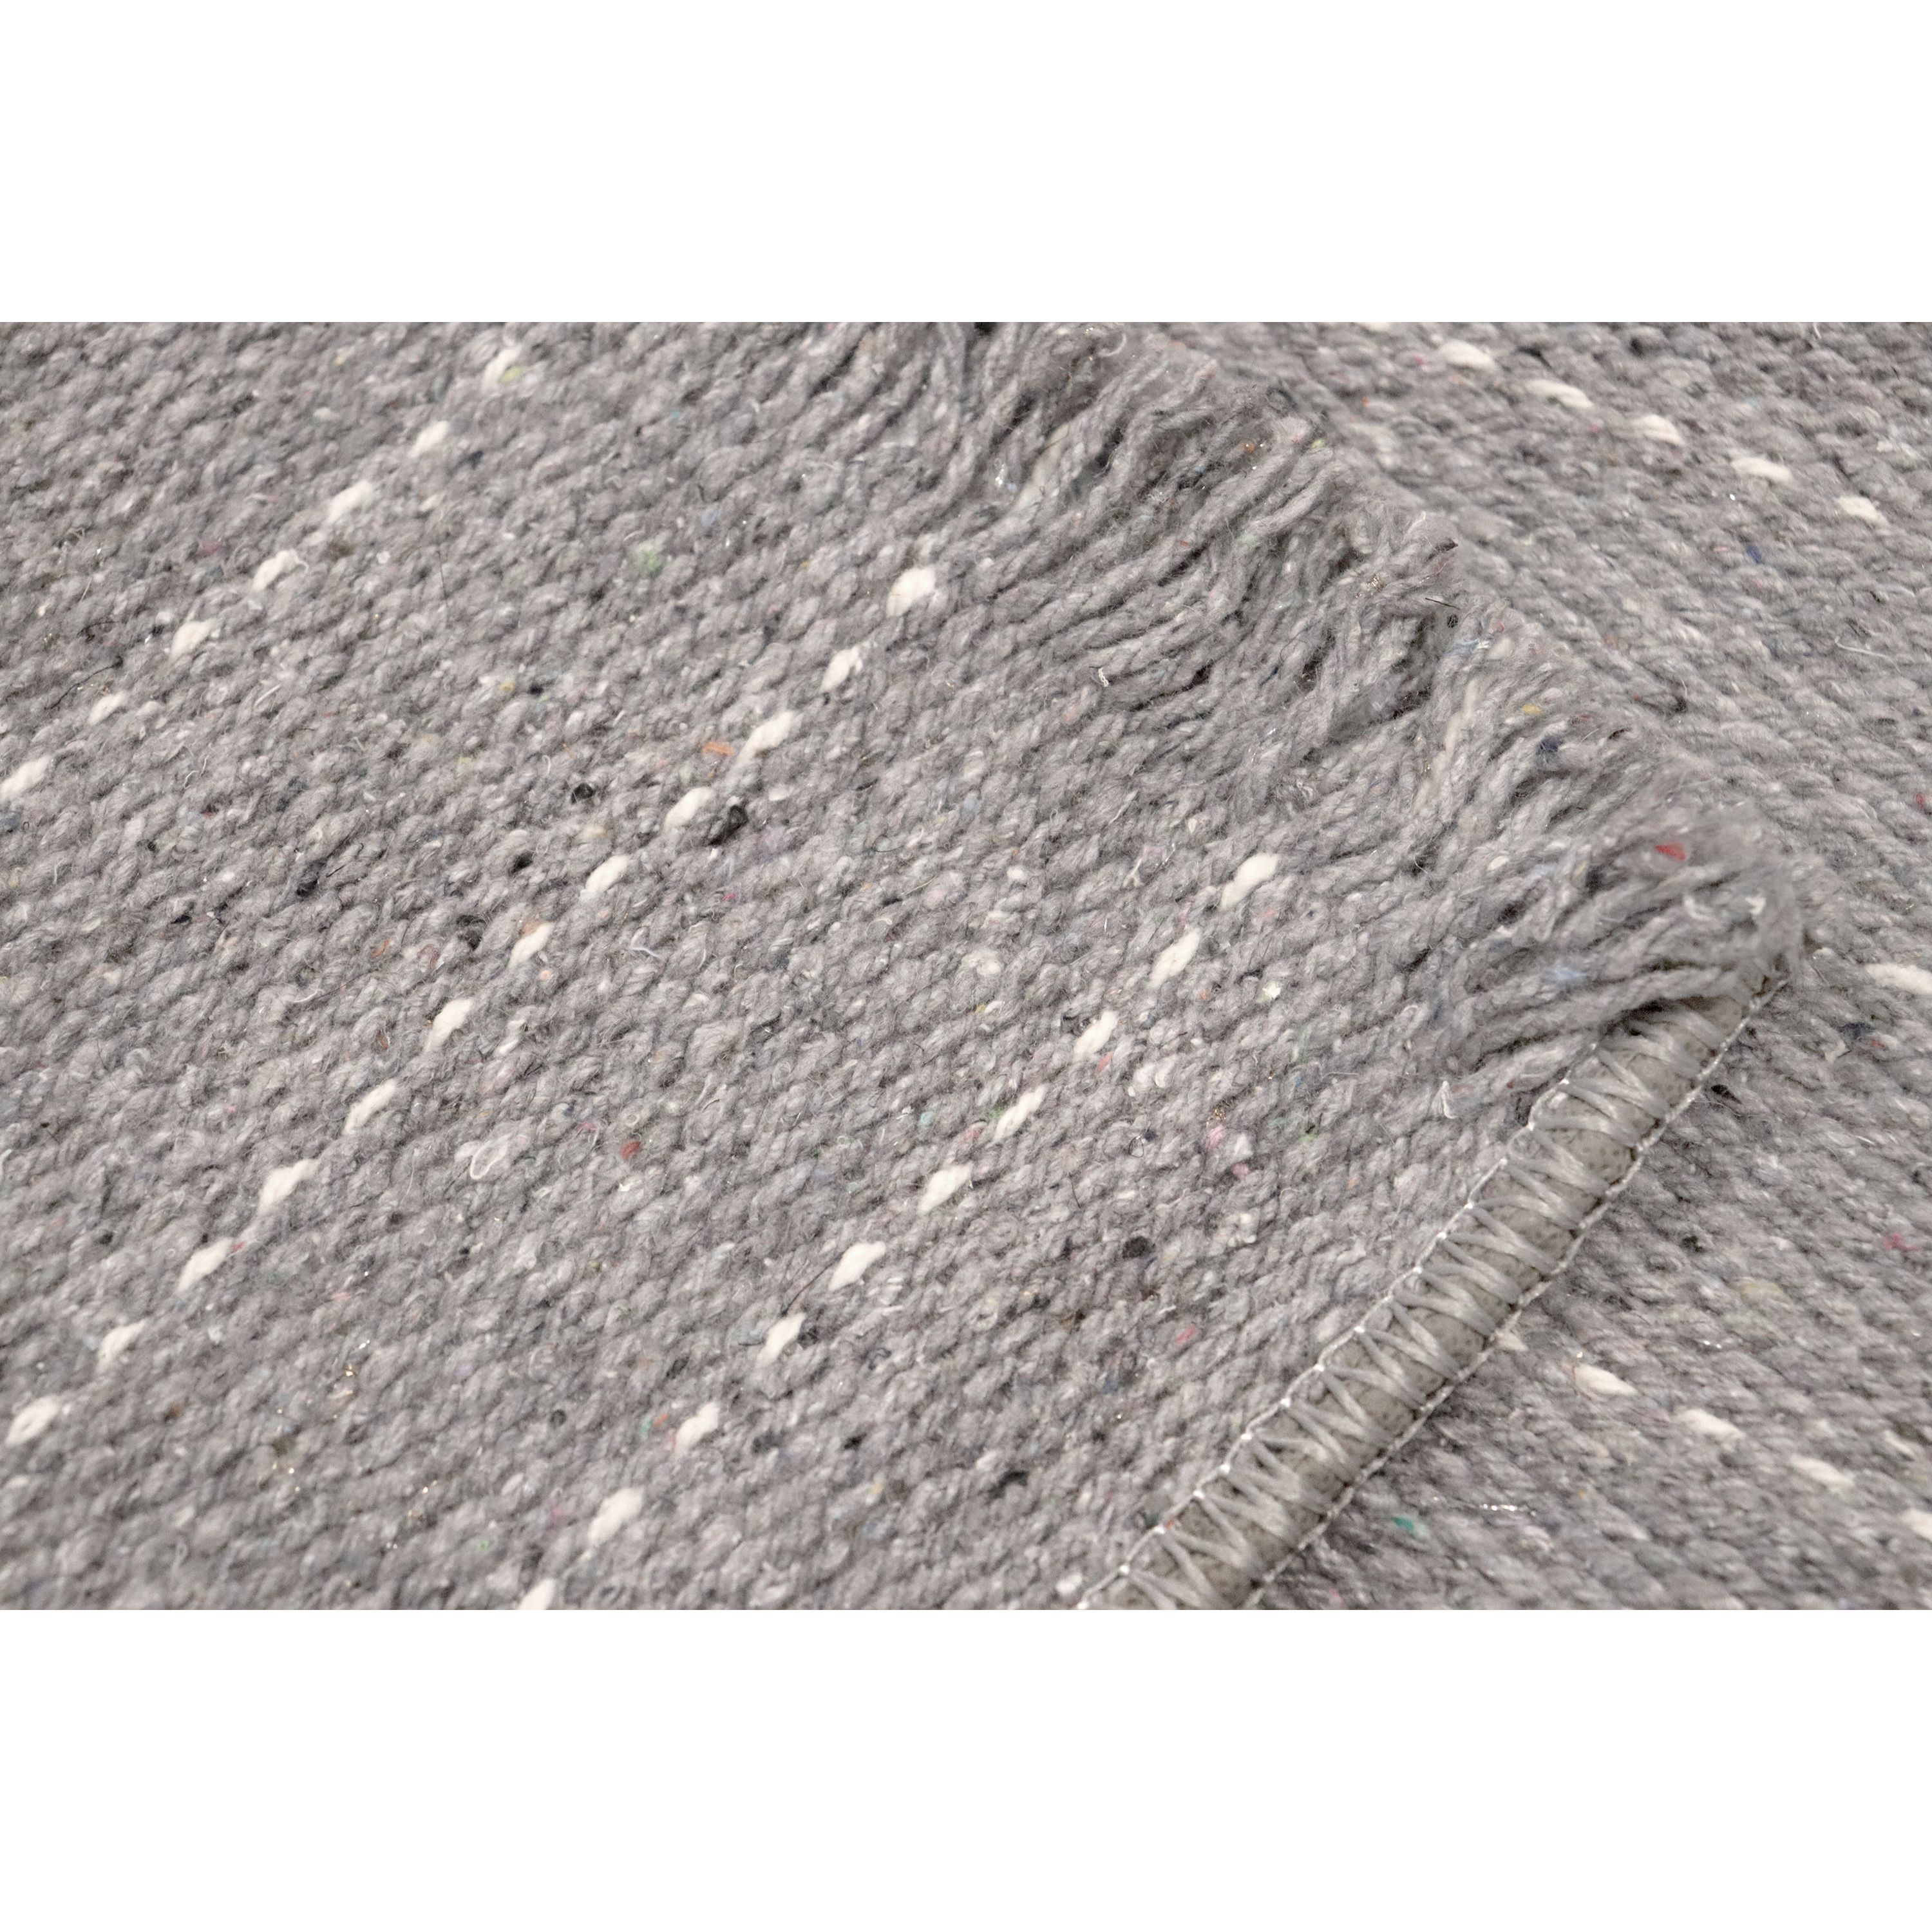 Ковер универсальный Izzihome Naturel Rug stripe grey 80х150 см серый (201AKGR004196) - фото 4